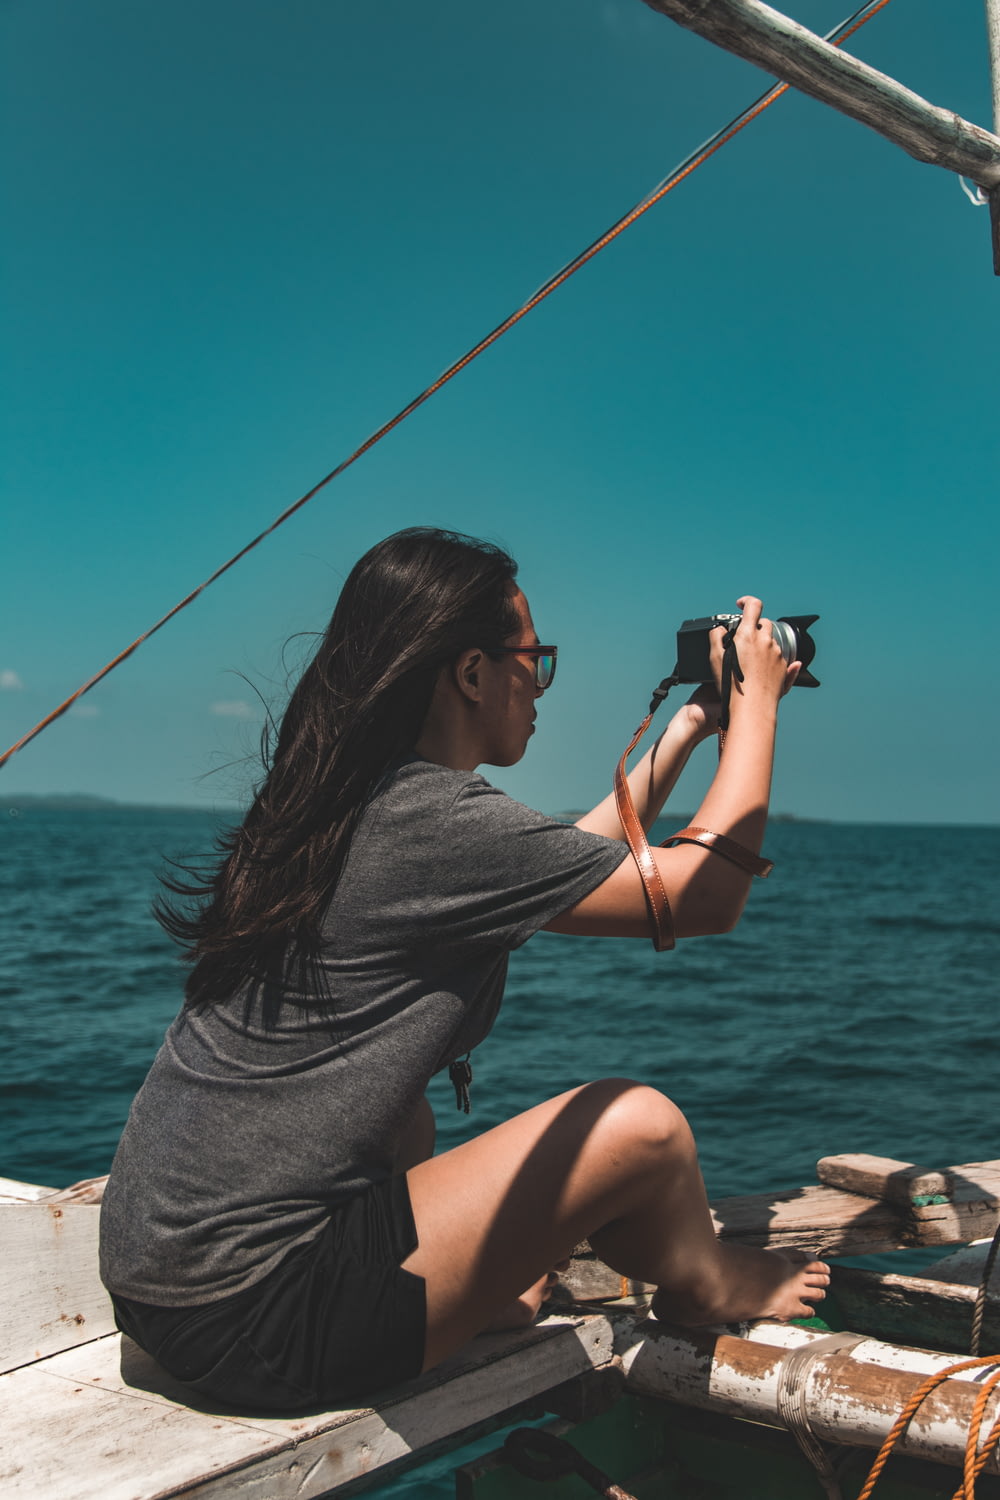 mujer sentada al lado del barco mientras sostiene la cámara DSLR